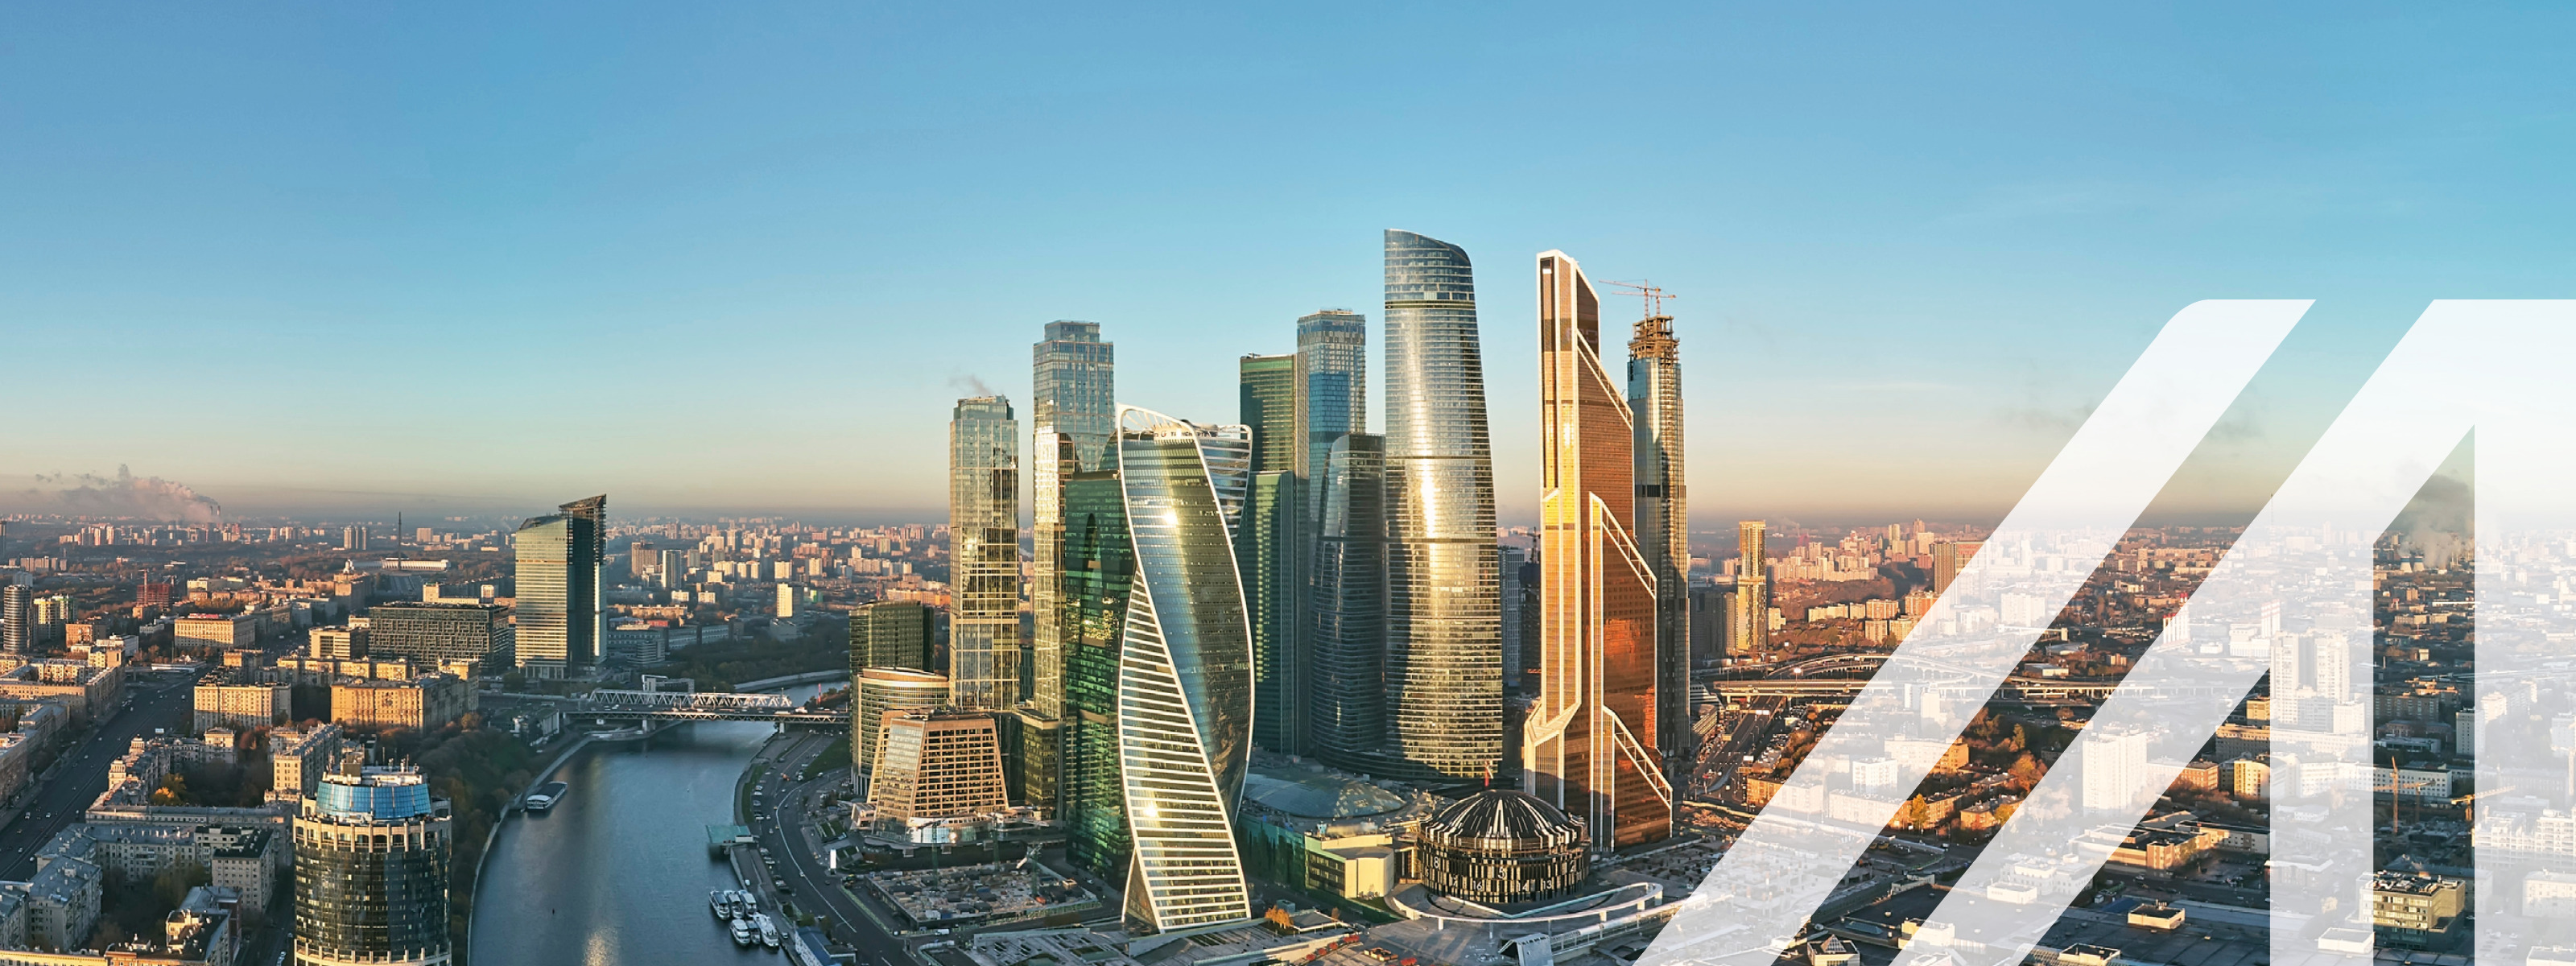 Blick auf  Moskauer International Business Center sowie Moskauer Skyline gelegen an der Moskwa.